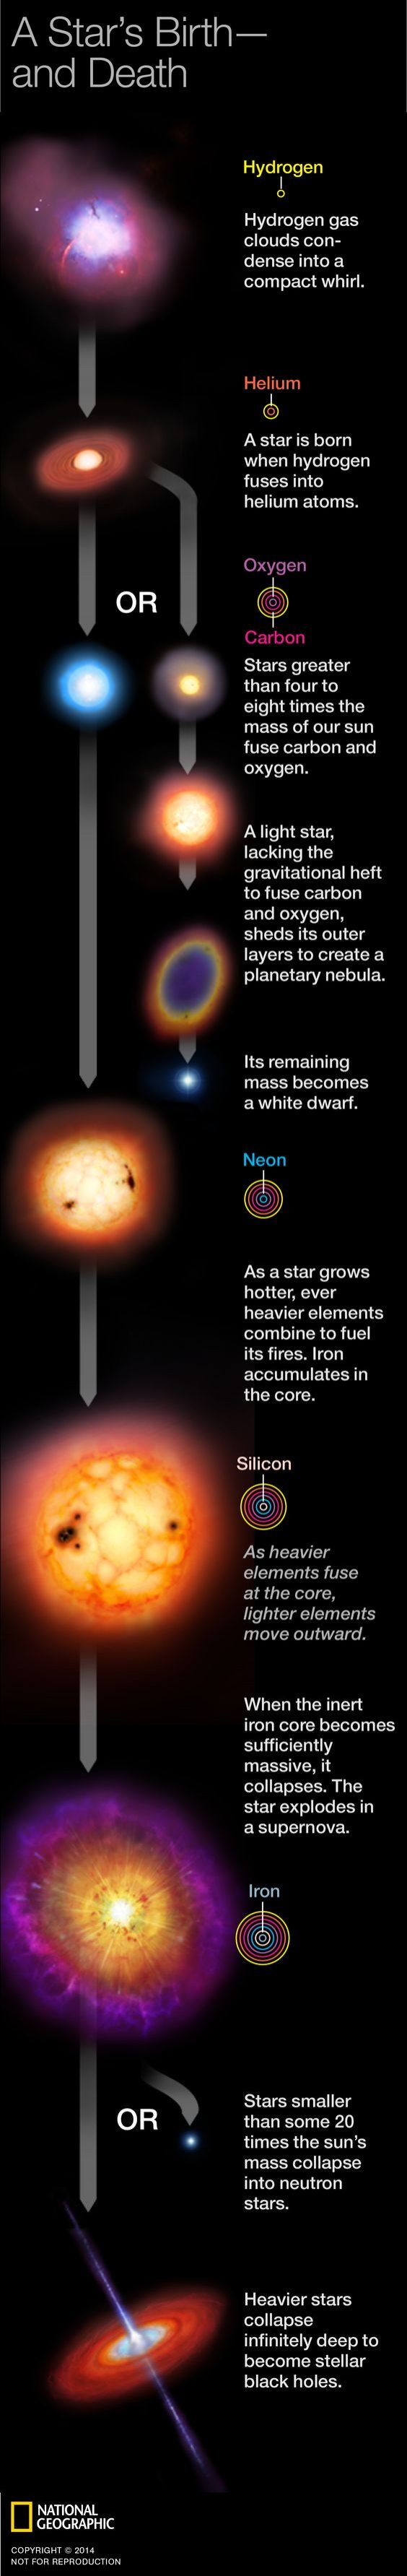 Astronomy infographic